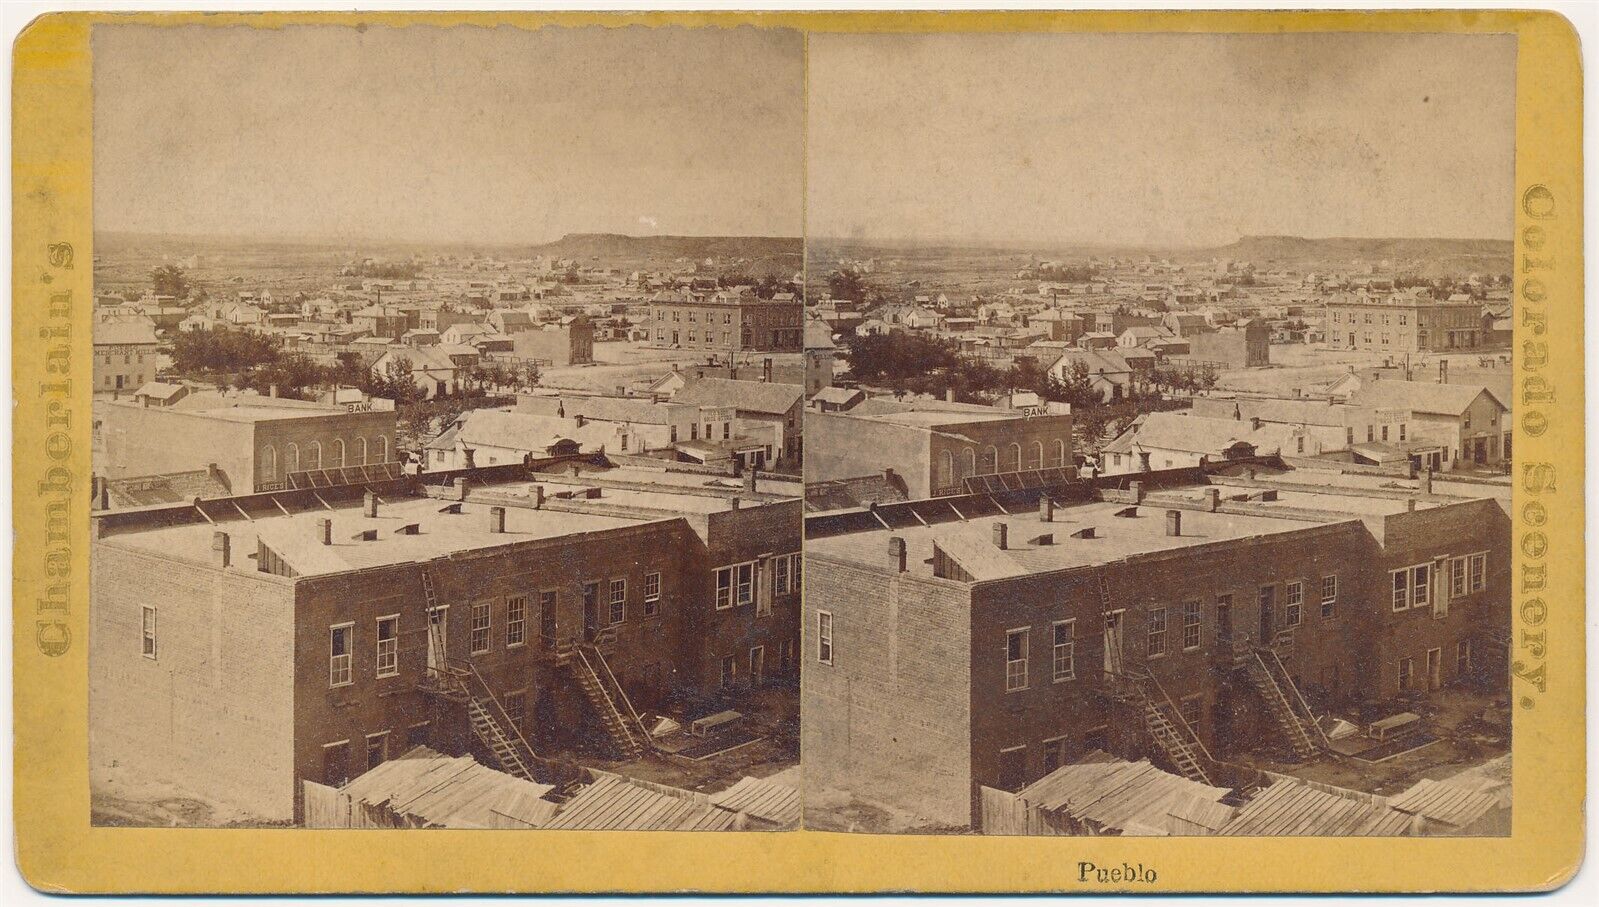 COLORADO SV - Pueblo Panorama - WG Chamberlain 1870s